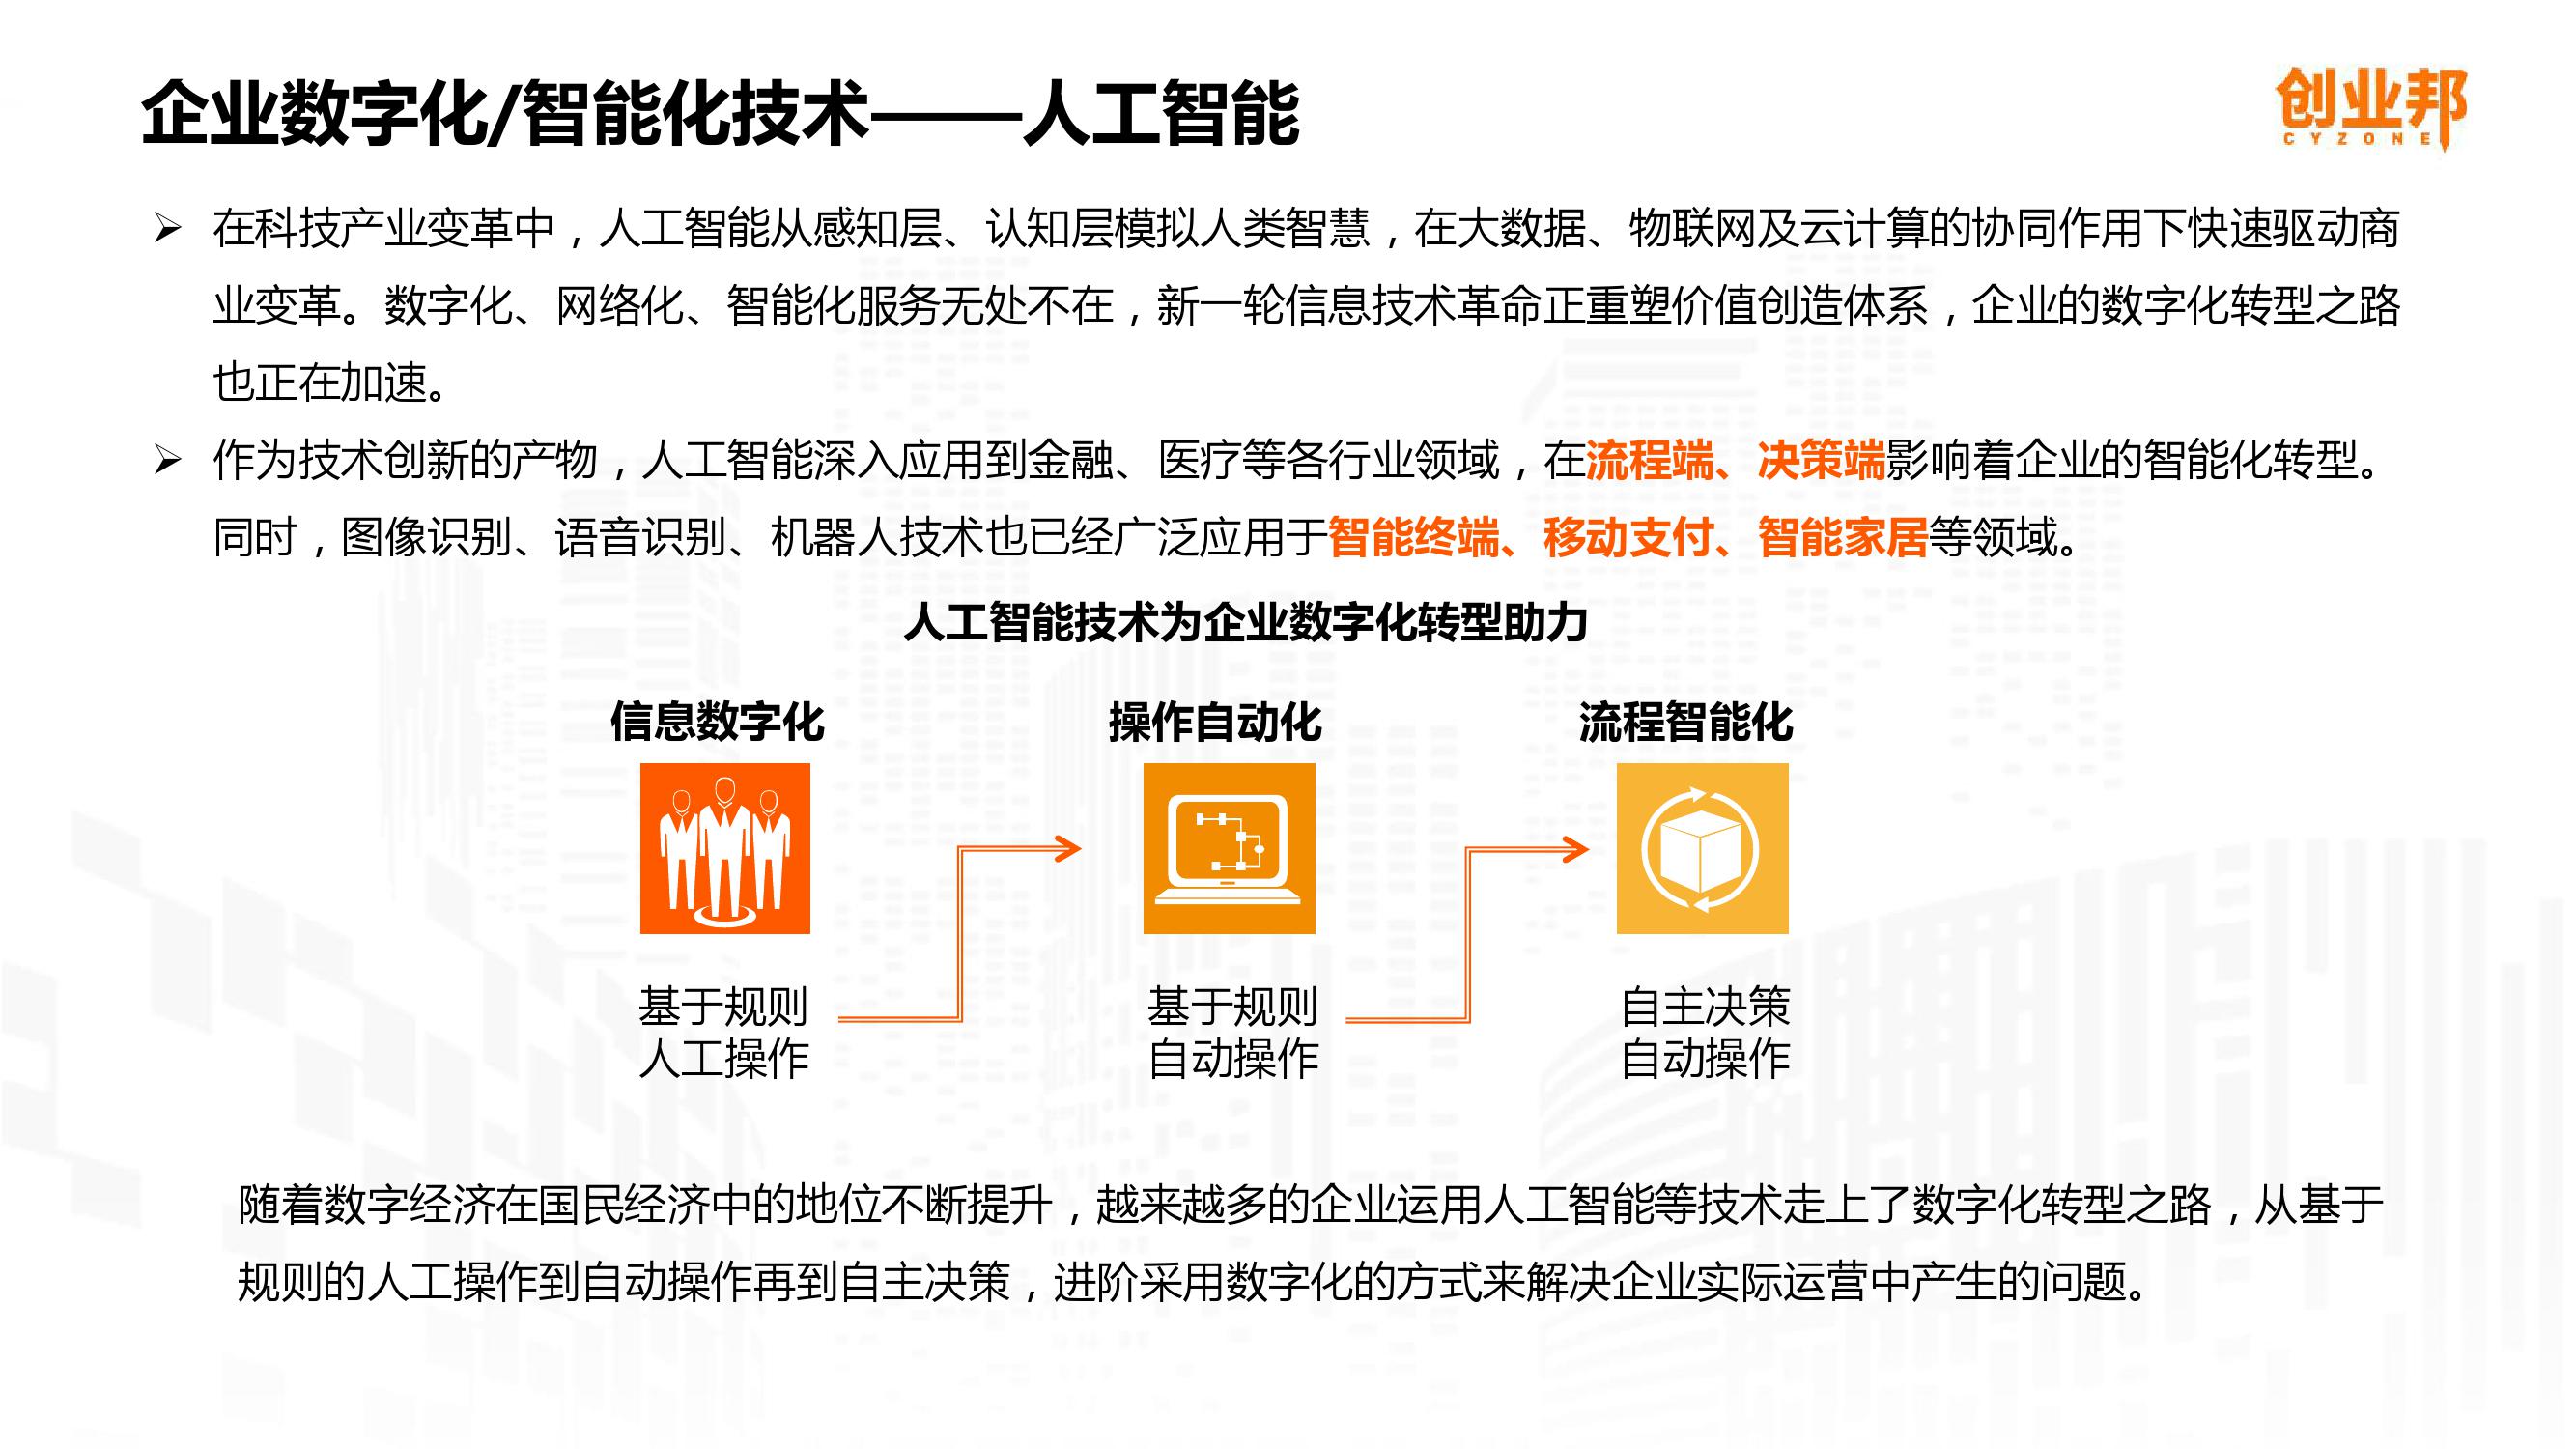 2019中国企业数字化智能化研究报告_000016-3